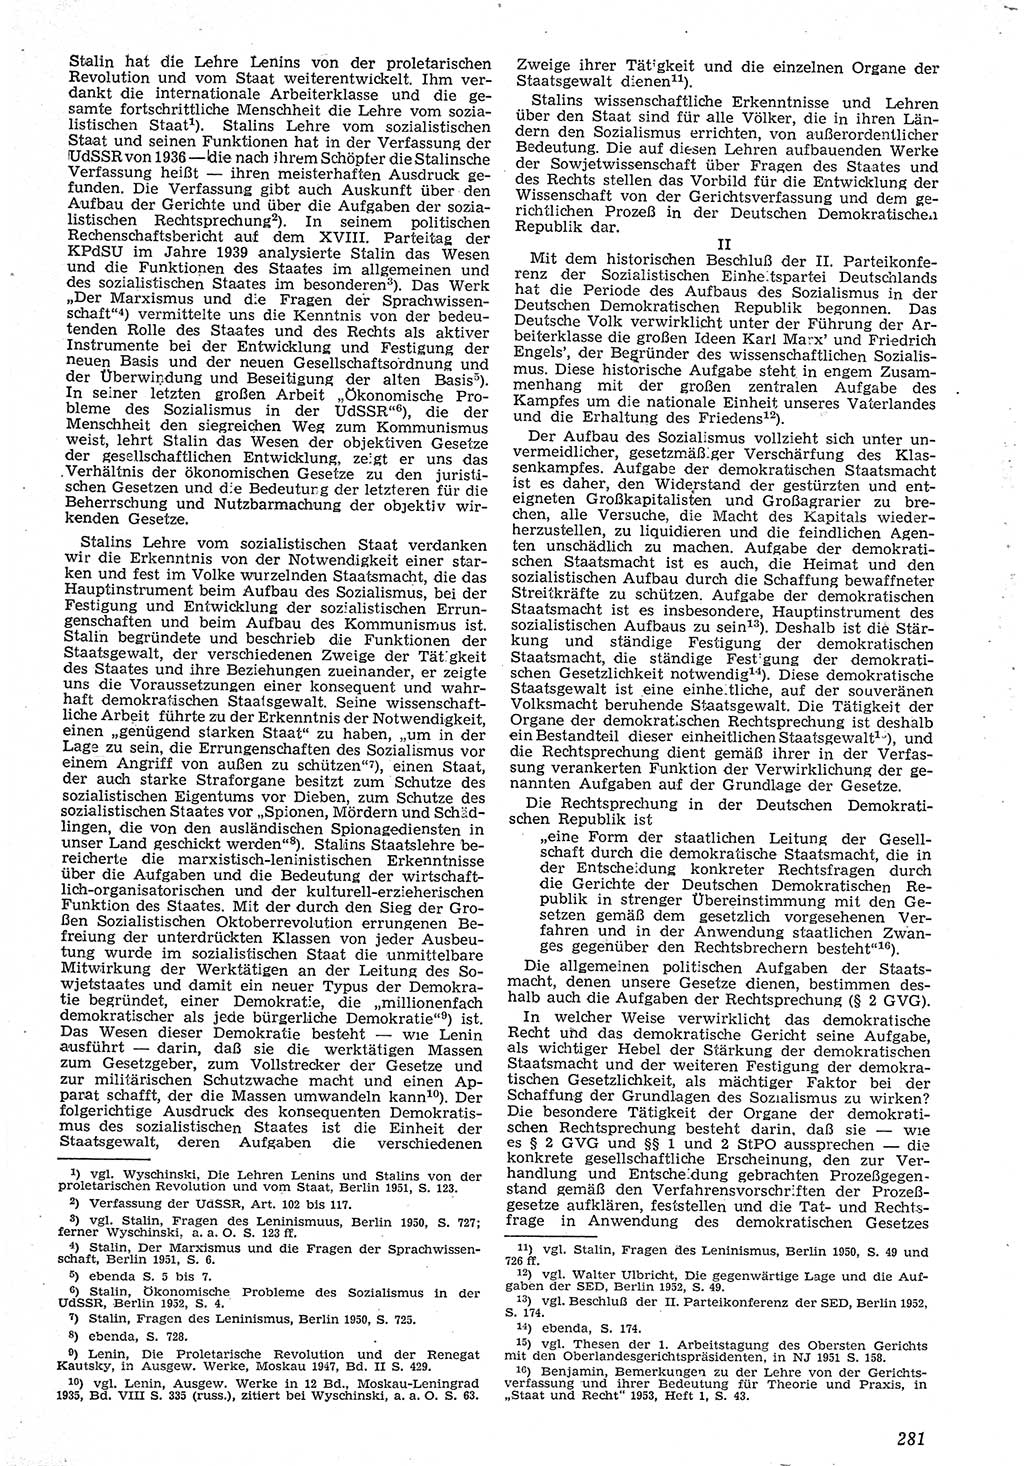 Neue Justiz (NJ), Zeitschrift für Recht und Rechtswissenschaft [Deutsche Demokratische Republik (DDR)], 7. Jahrgang 1953, Seite 281 (NJ DDR 1953, S. 281)